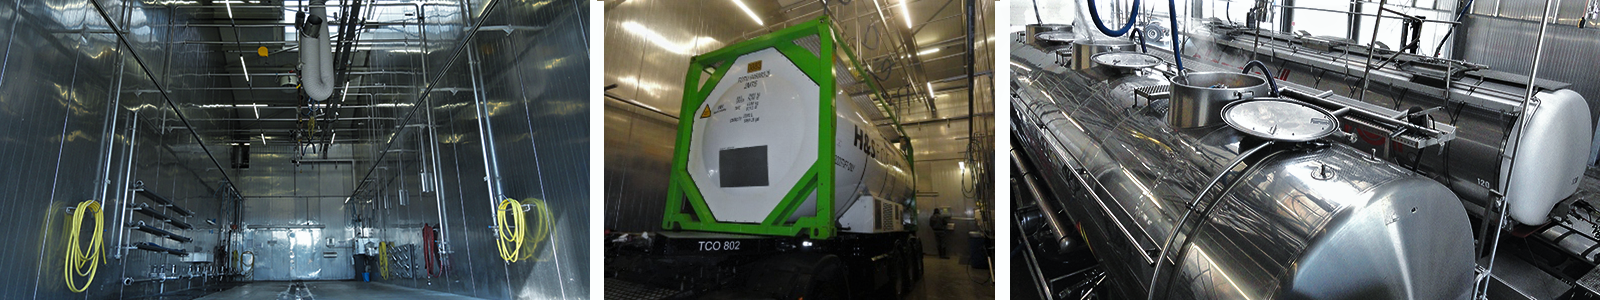 Truckcleaning Venlo utiliza los sistemas de limpieza eléctrica de fluidos JP para limpiar los depósitos de los camiones.